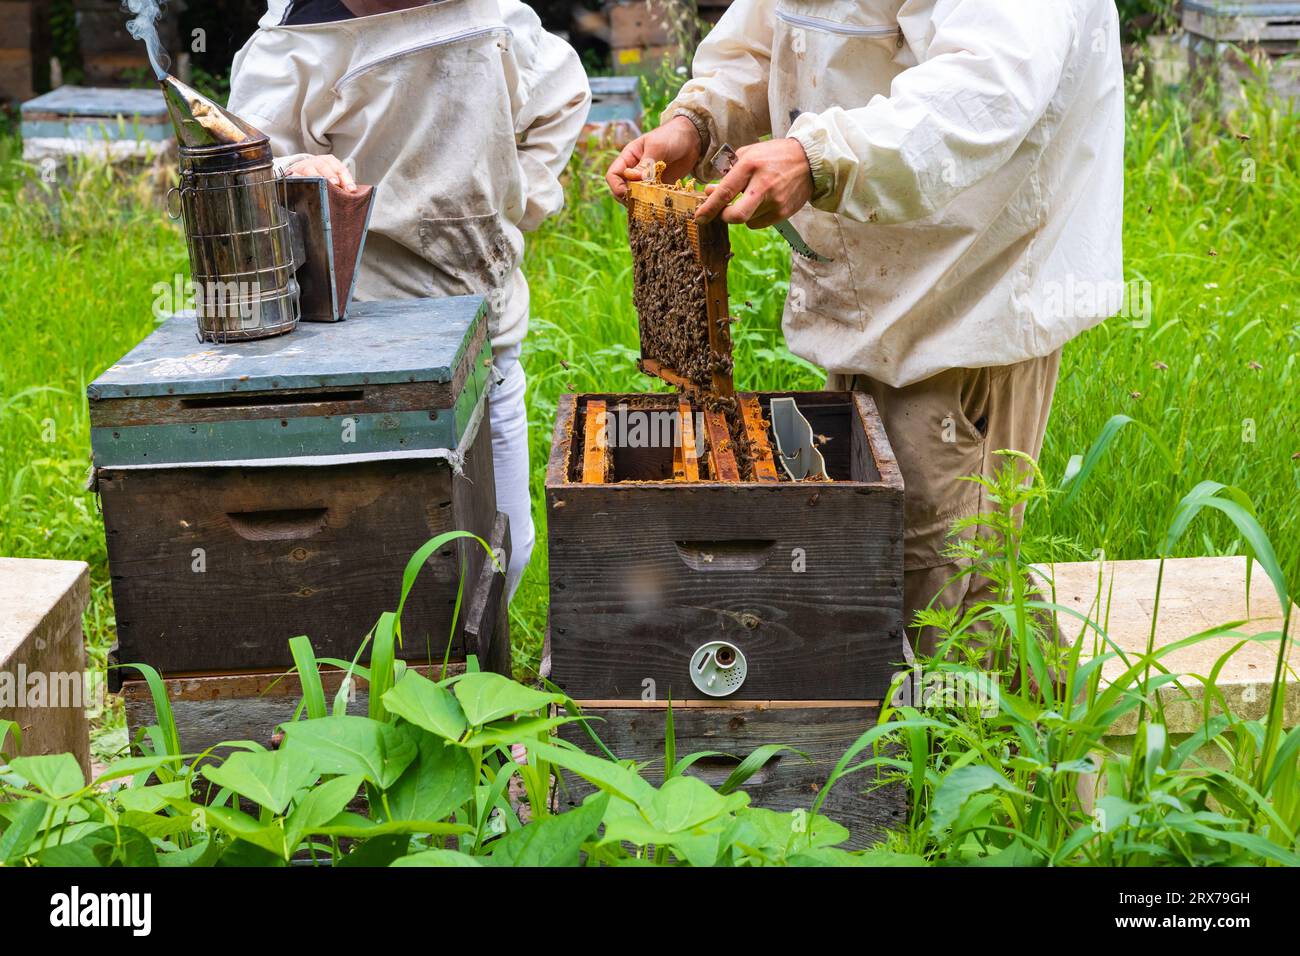 Apiaristes ou apiculteurs vérifiant les ruches avec un motard et une combinaison de protection en rucher. Photo de fond apicole ou apicole. Banque D'Images